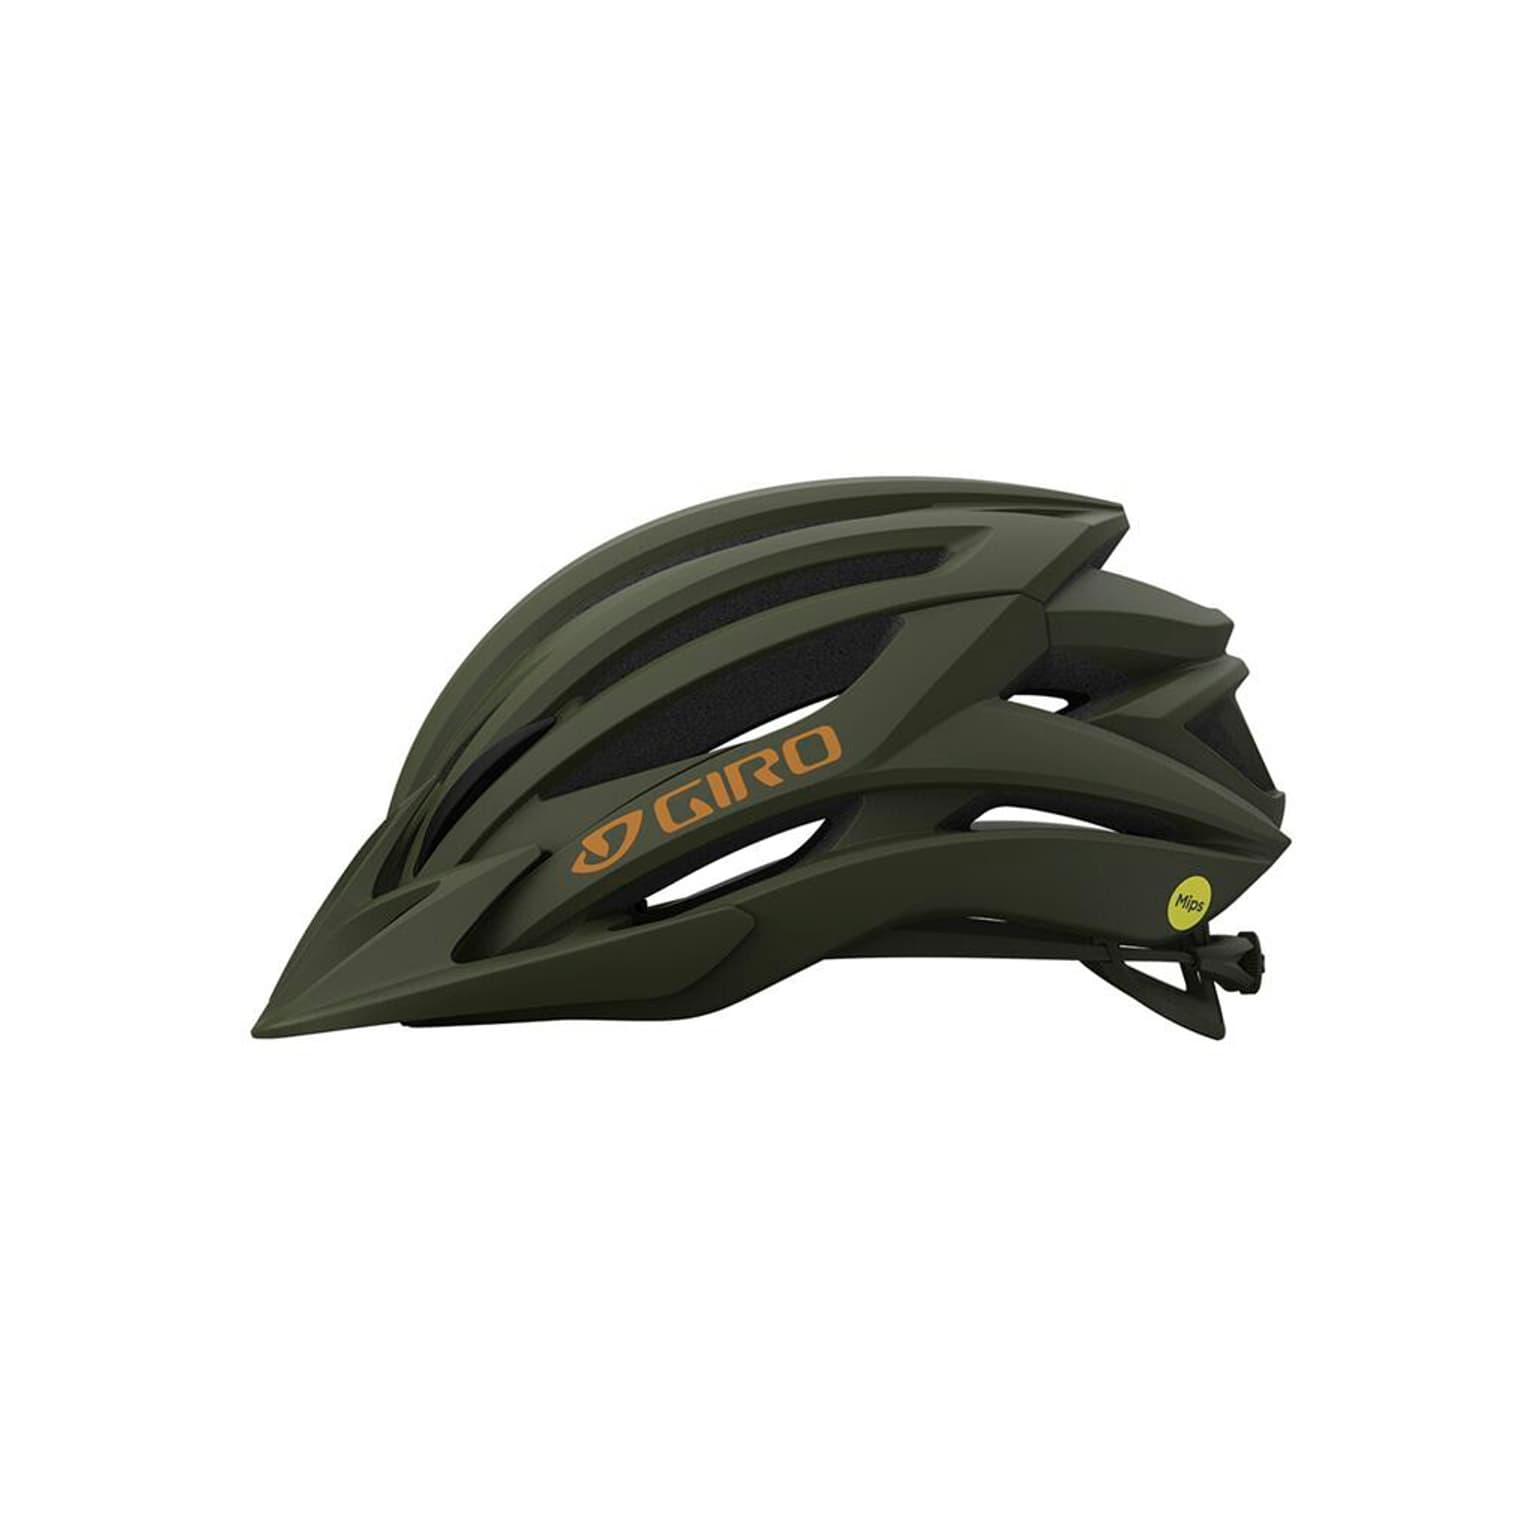 Giro Giro Artex MIPS Helmet Velohelm oliva 2